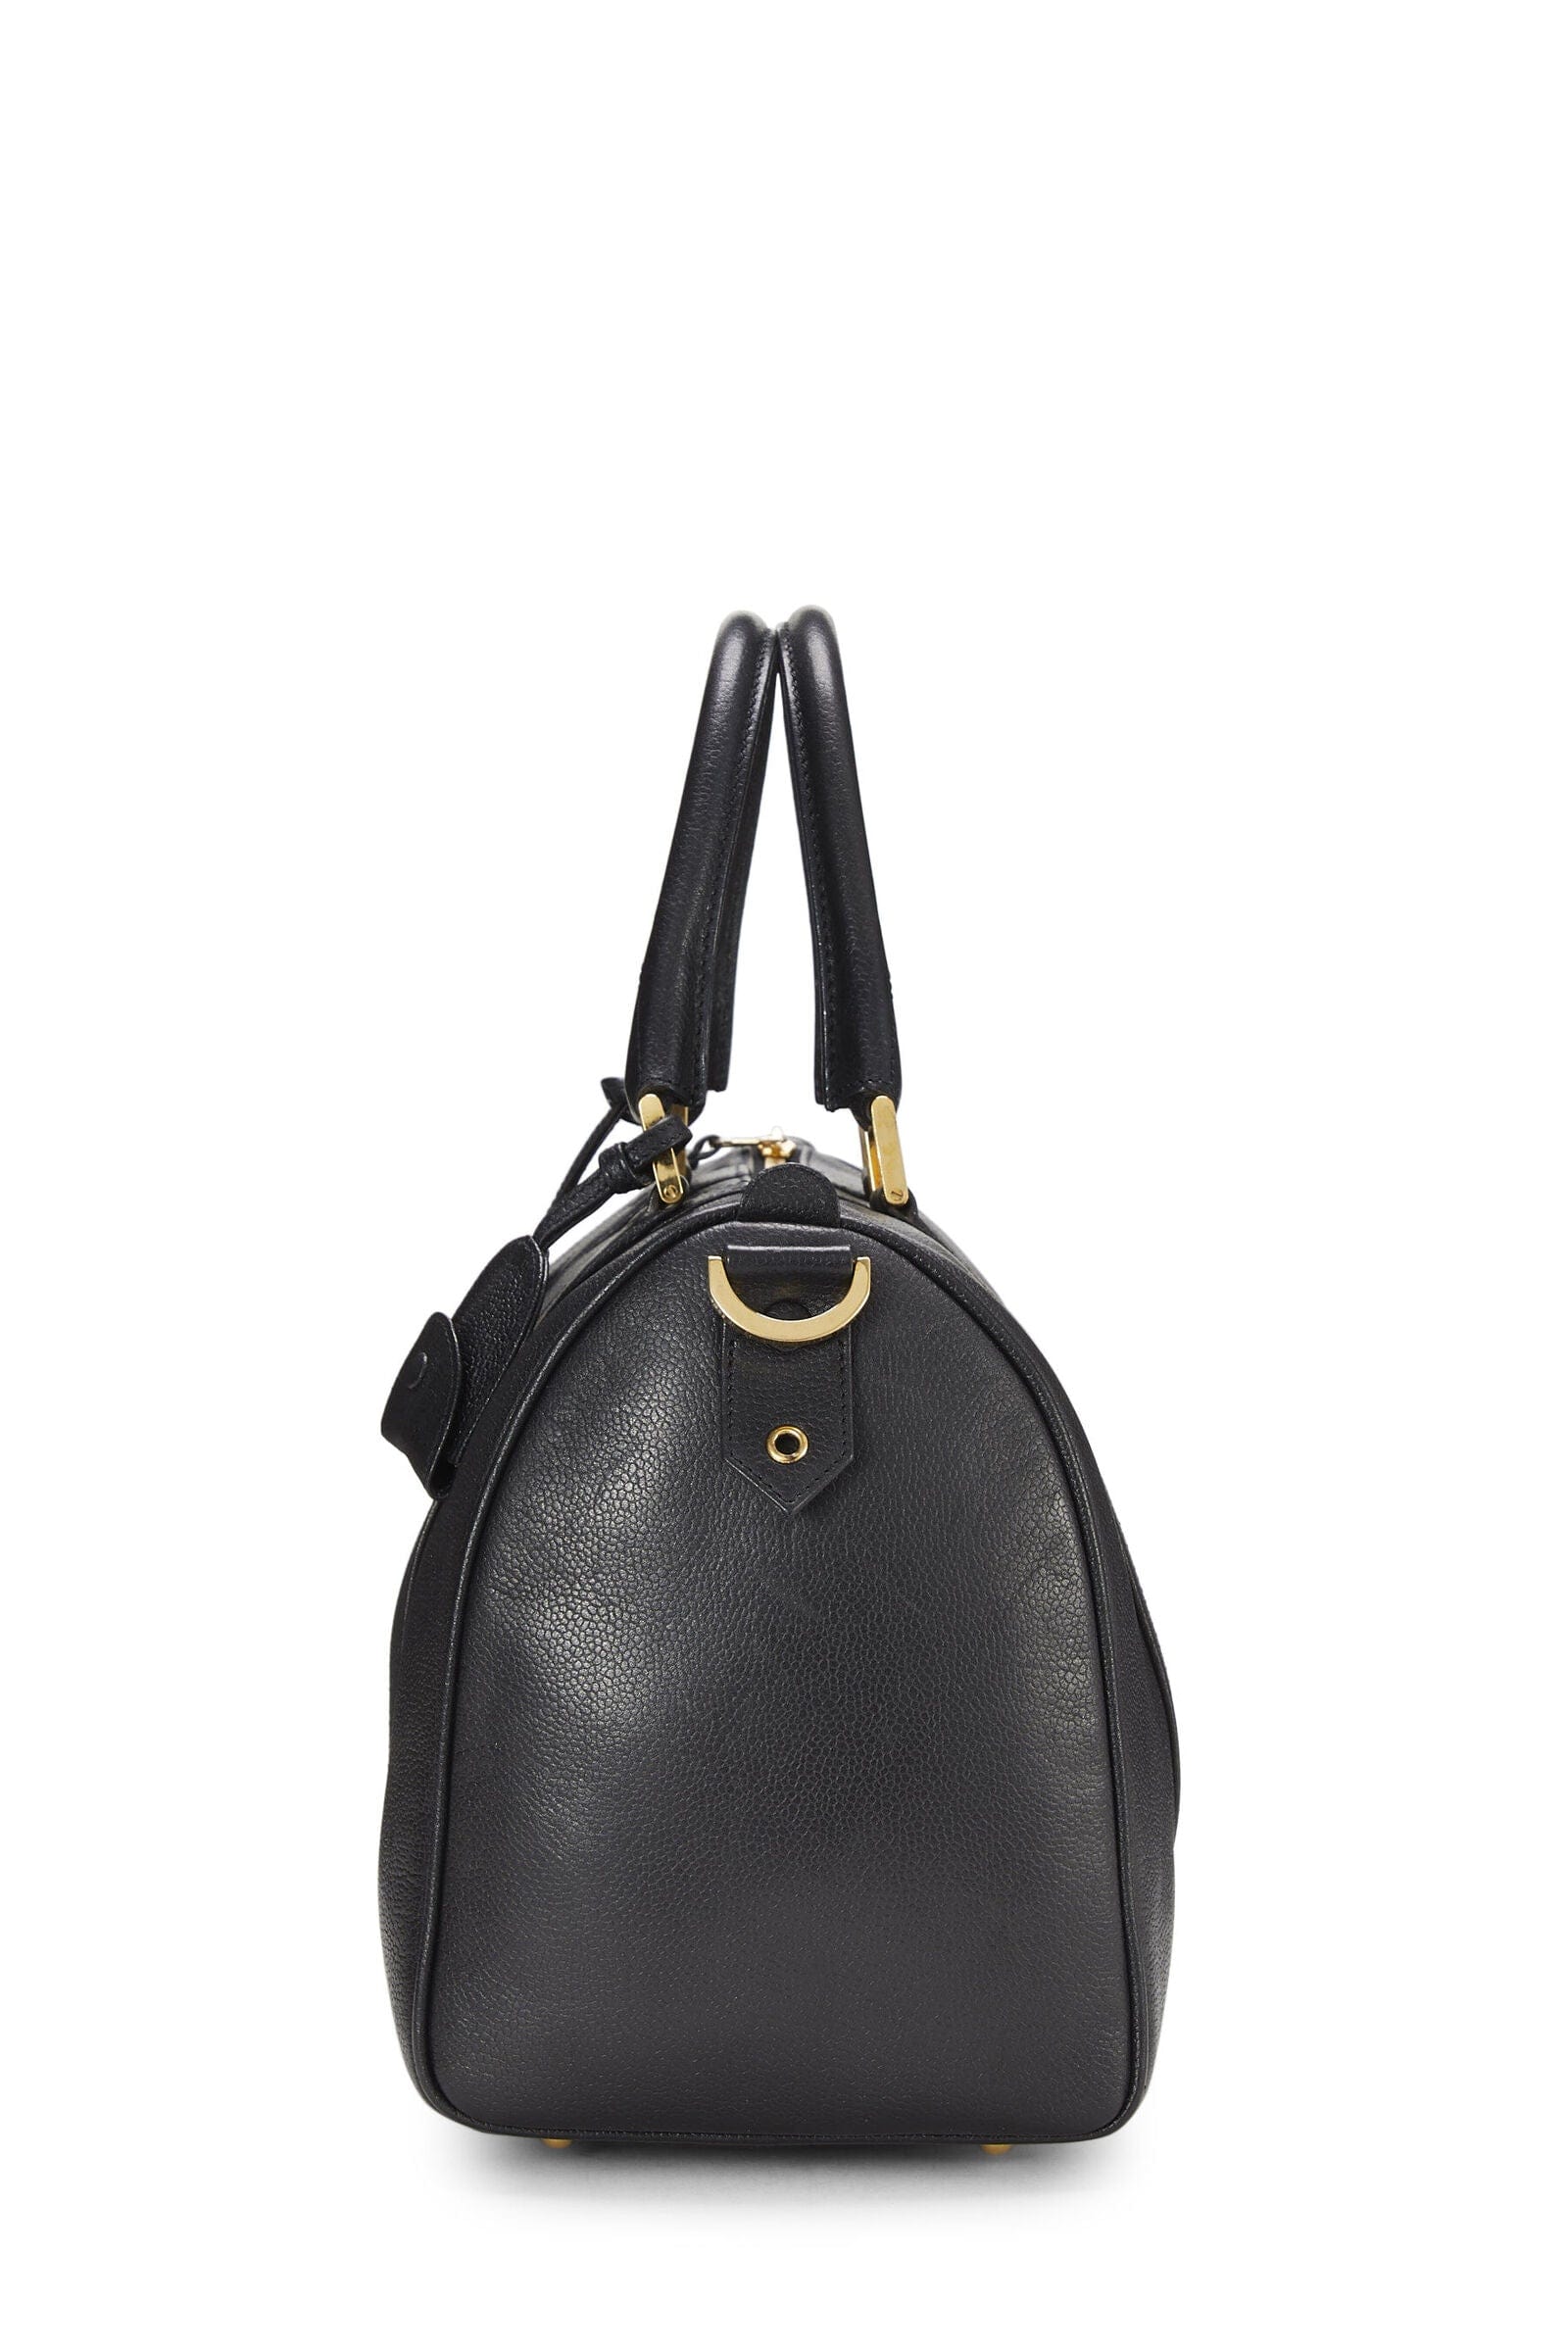 Chanel Chanel Black Small Boston Bag Q6B04J0FKH010